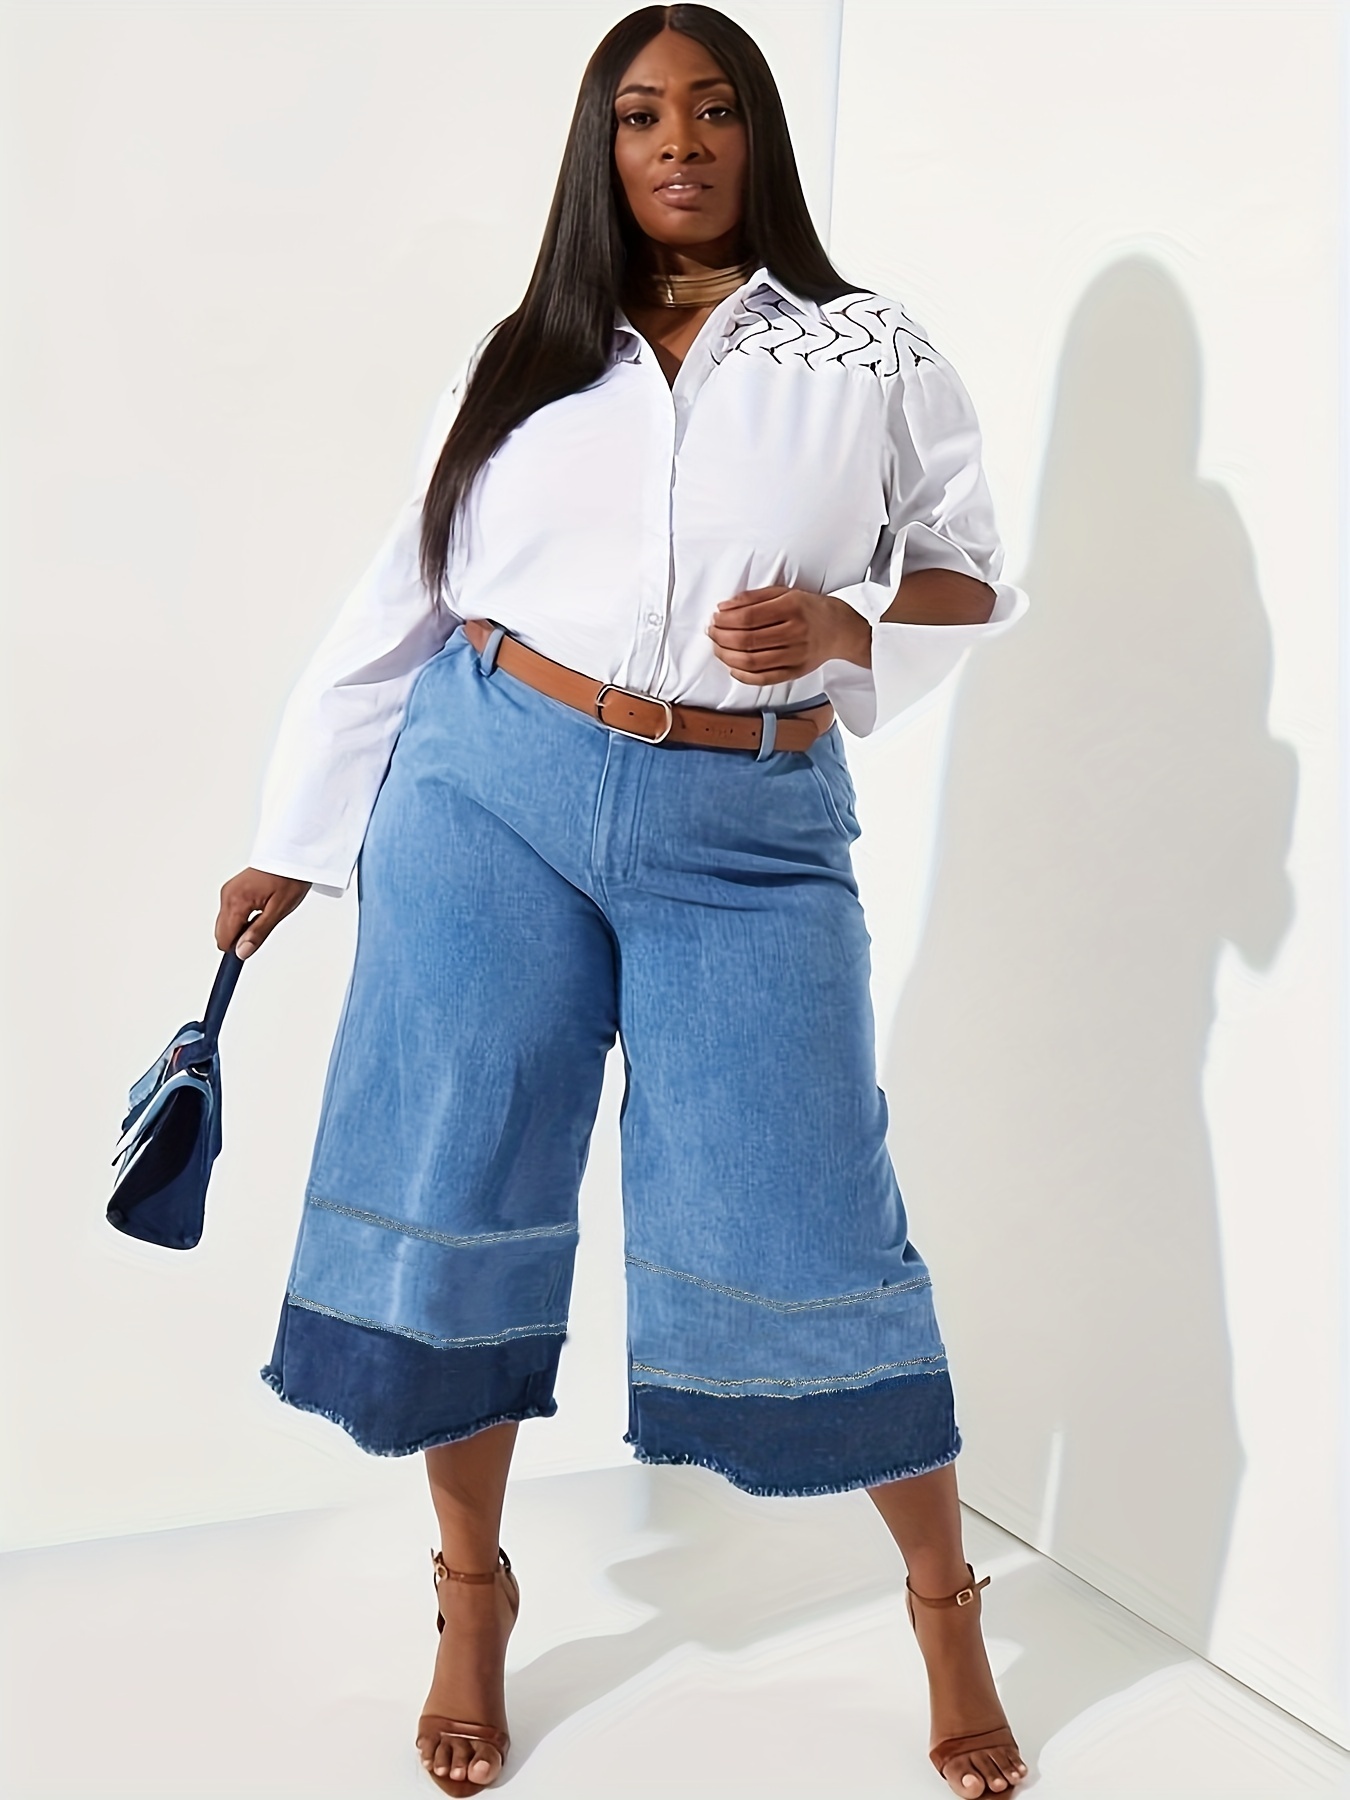 Jeans elásticos mujer tallas grandes - Pantalones, Faldas